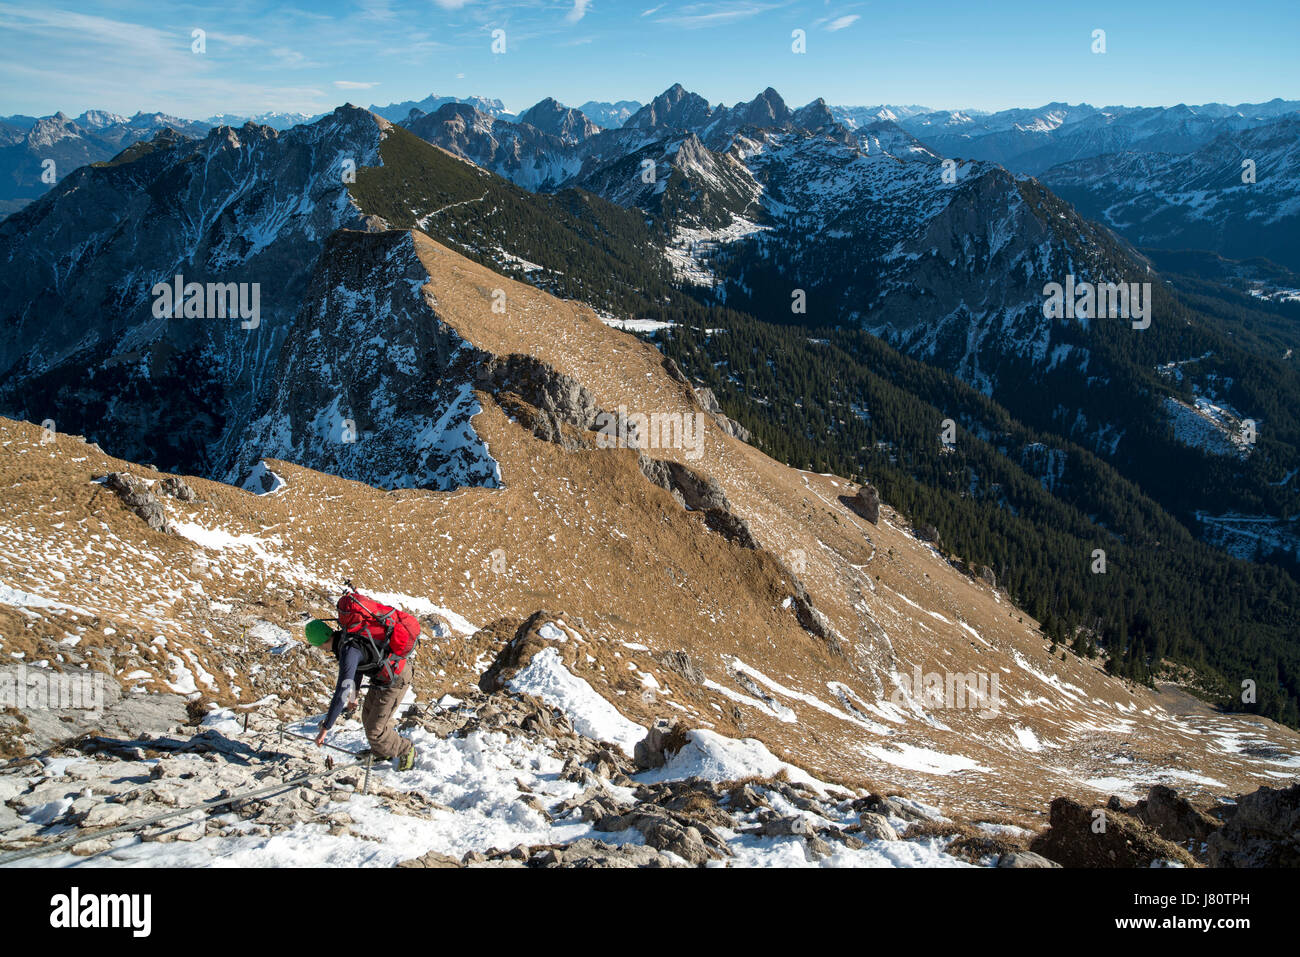 Abstieg vom Aggenstein im Winter, Grän, Tannheimer Tal, Tirol, Österreich. Descente de Mt Aggenstein, Tyrol, Autriche. Banque D'Images